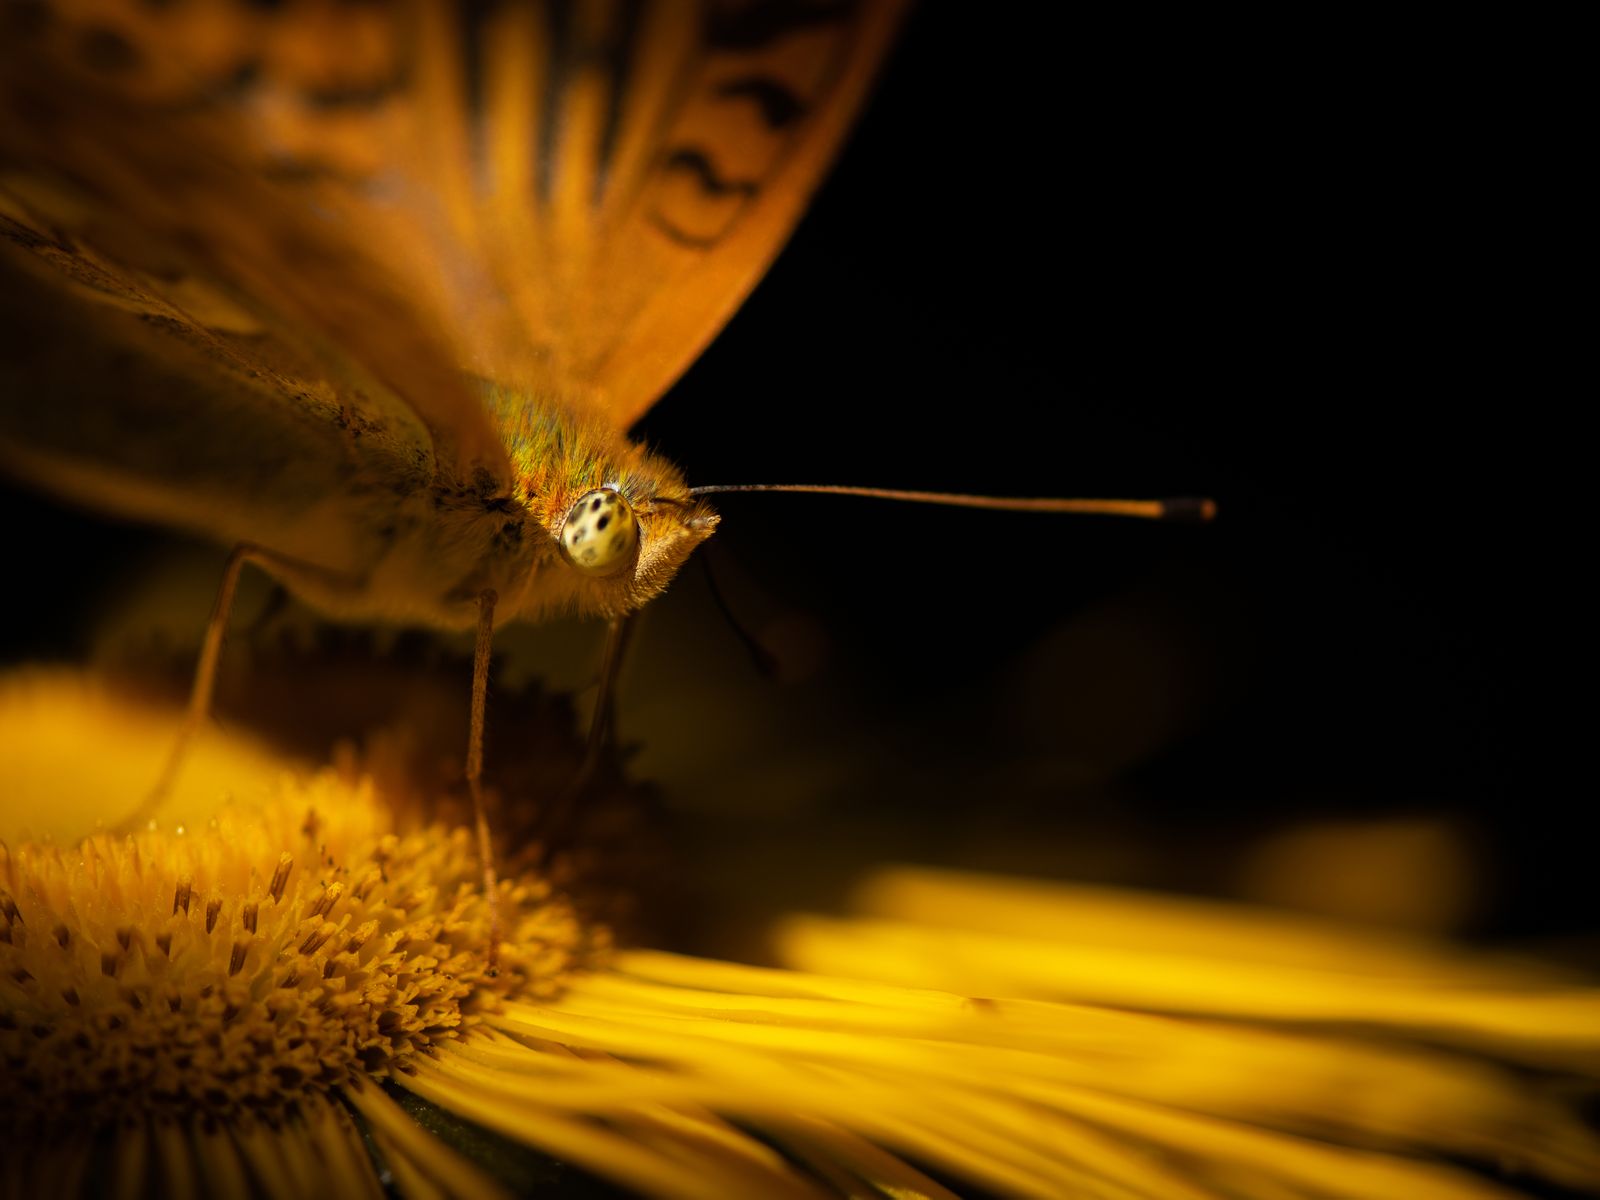 Découvrez des insectes incroyables de près avec ces photos effrayantes |  Science